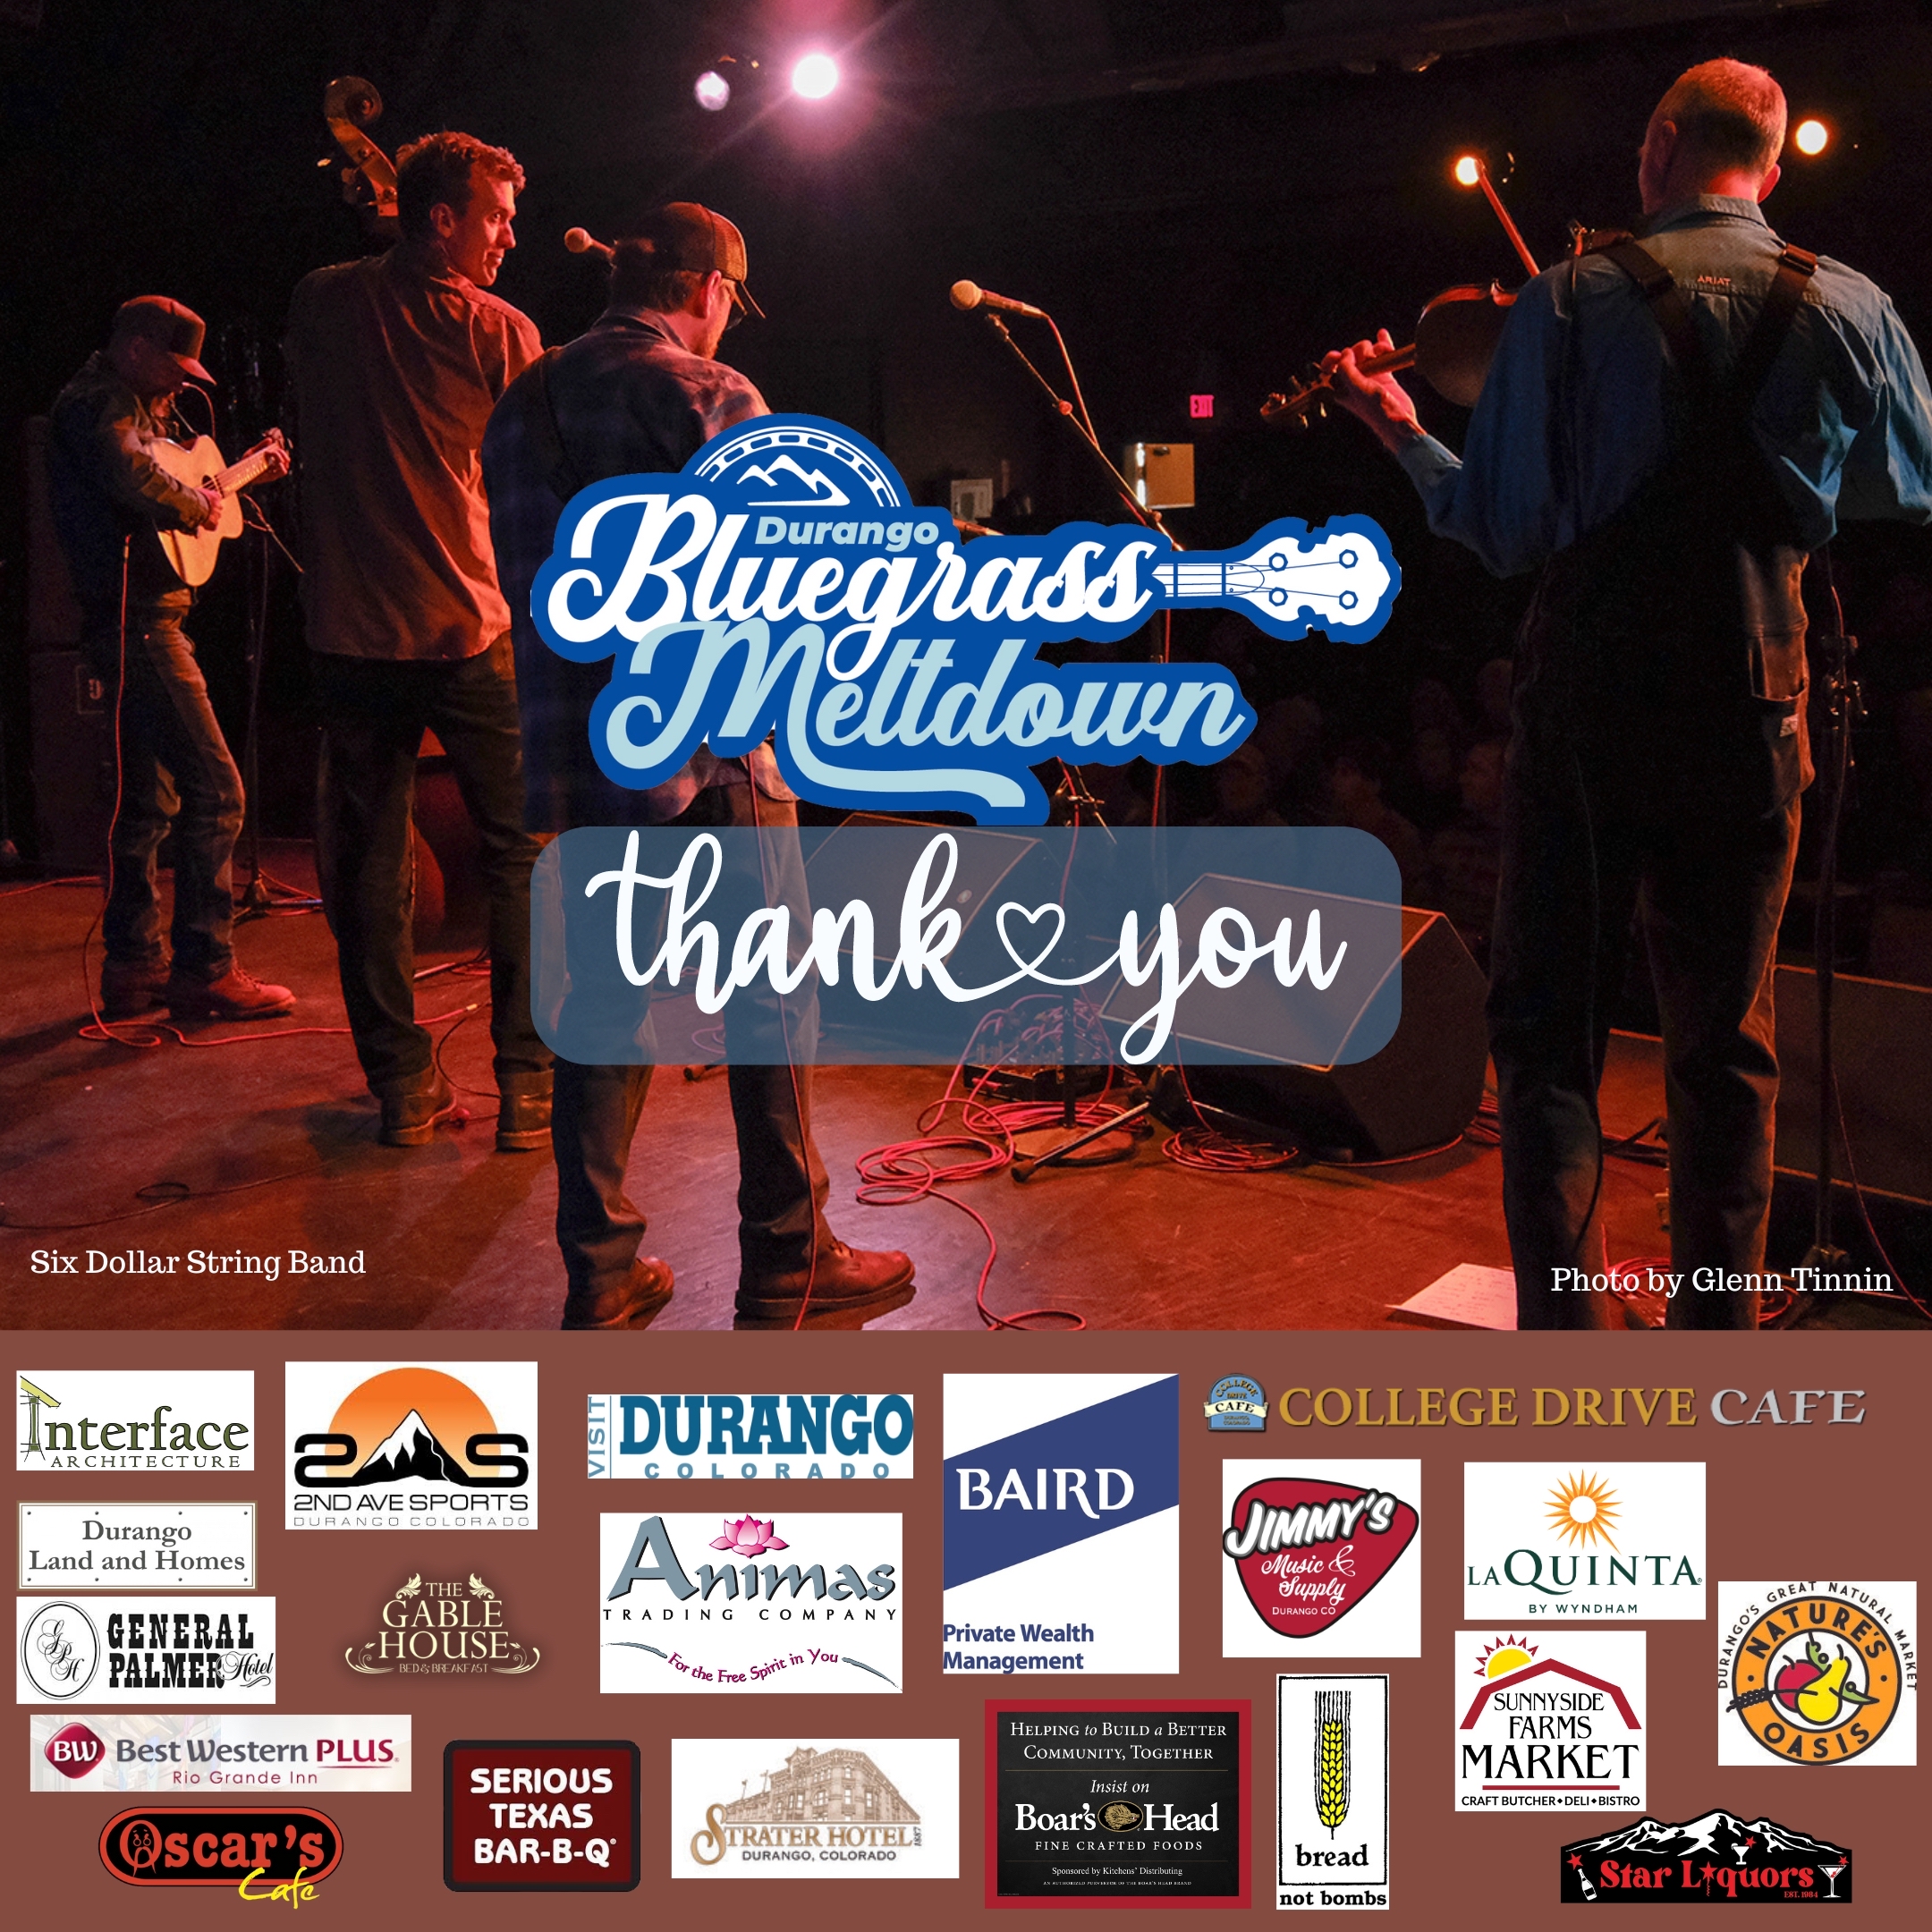 Durango Bluegrass Meltdown thank you poster with sponsor logos